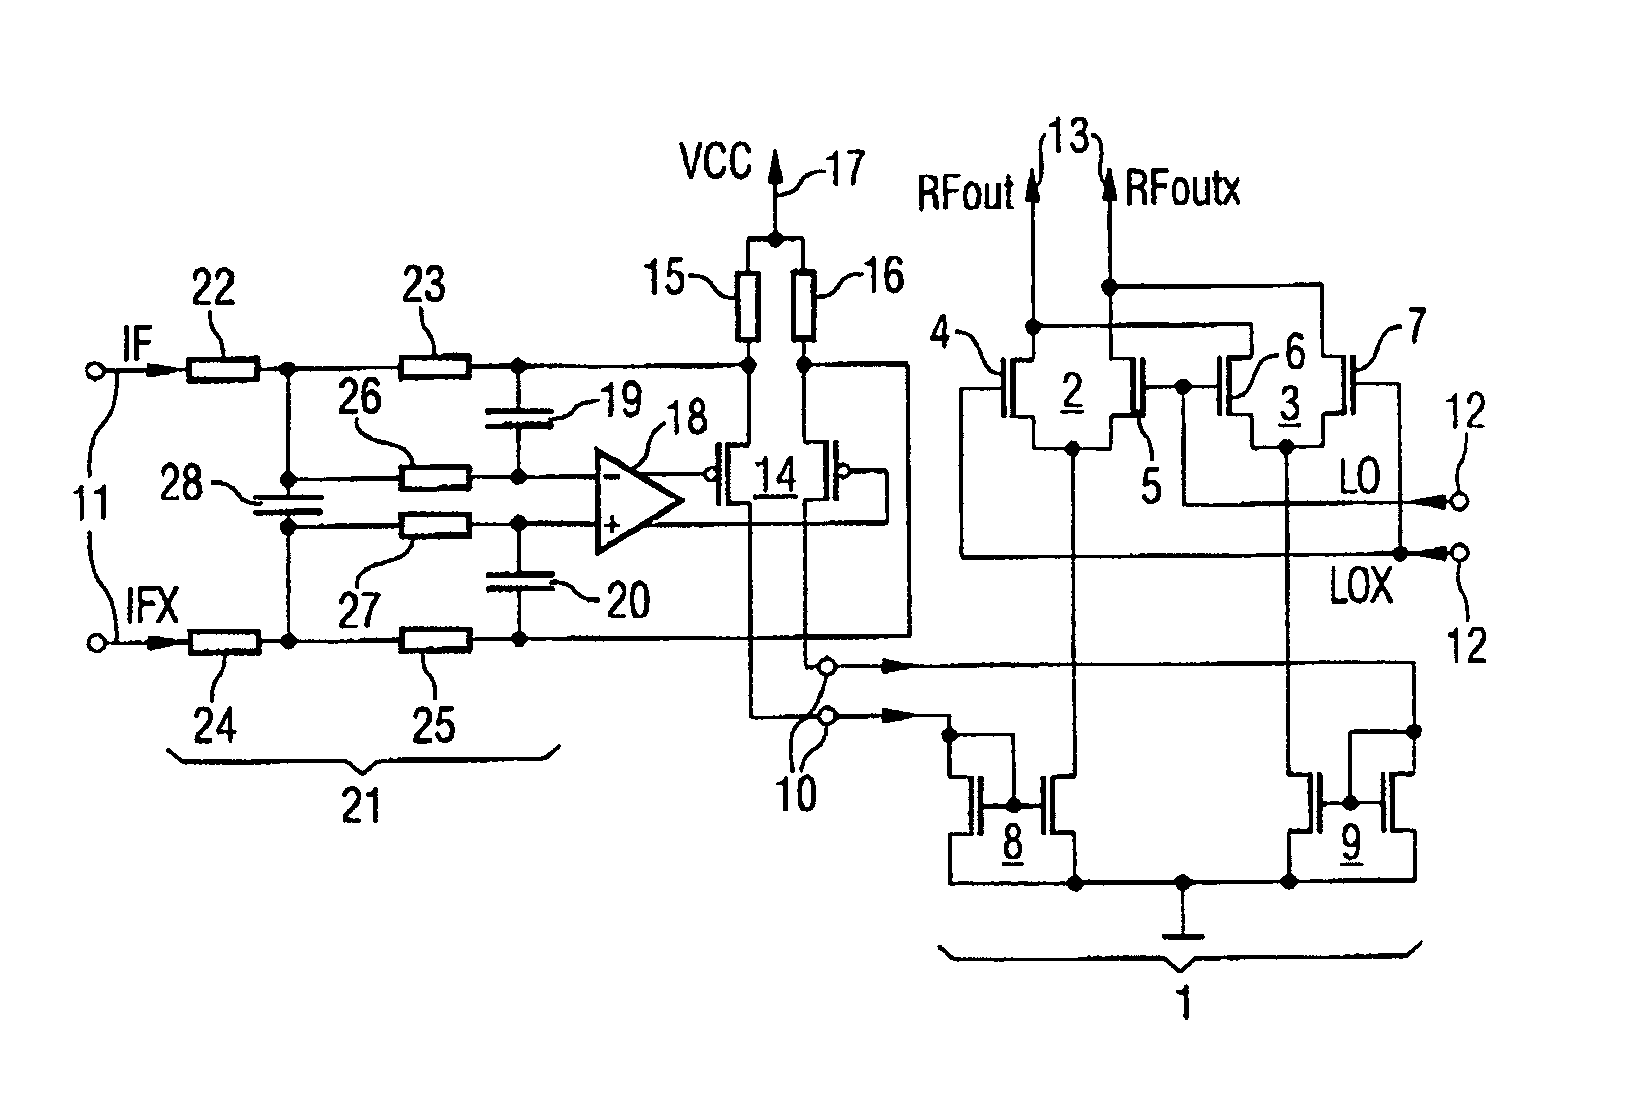 Radio-frequency mixer arrangement